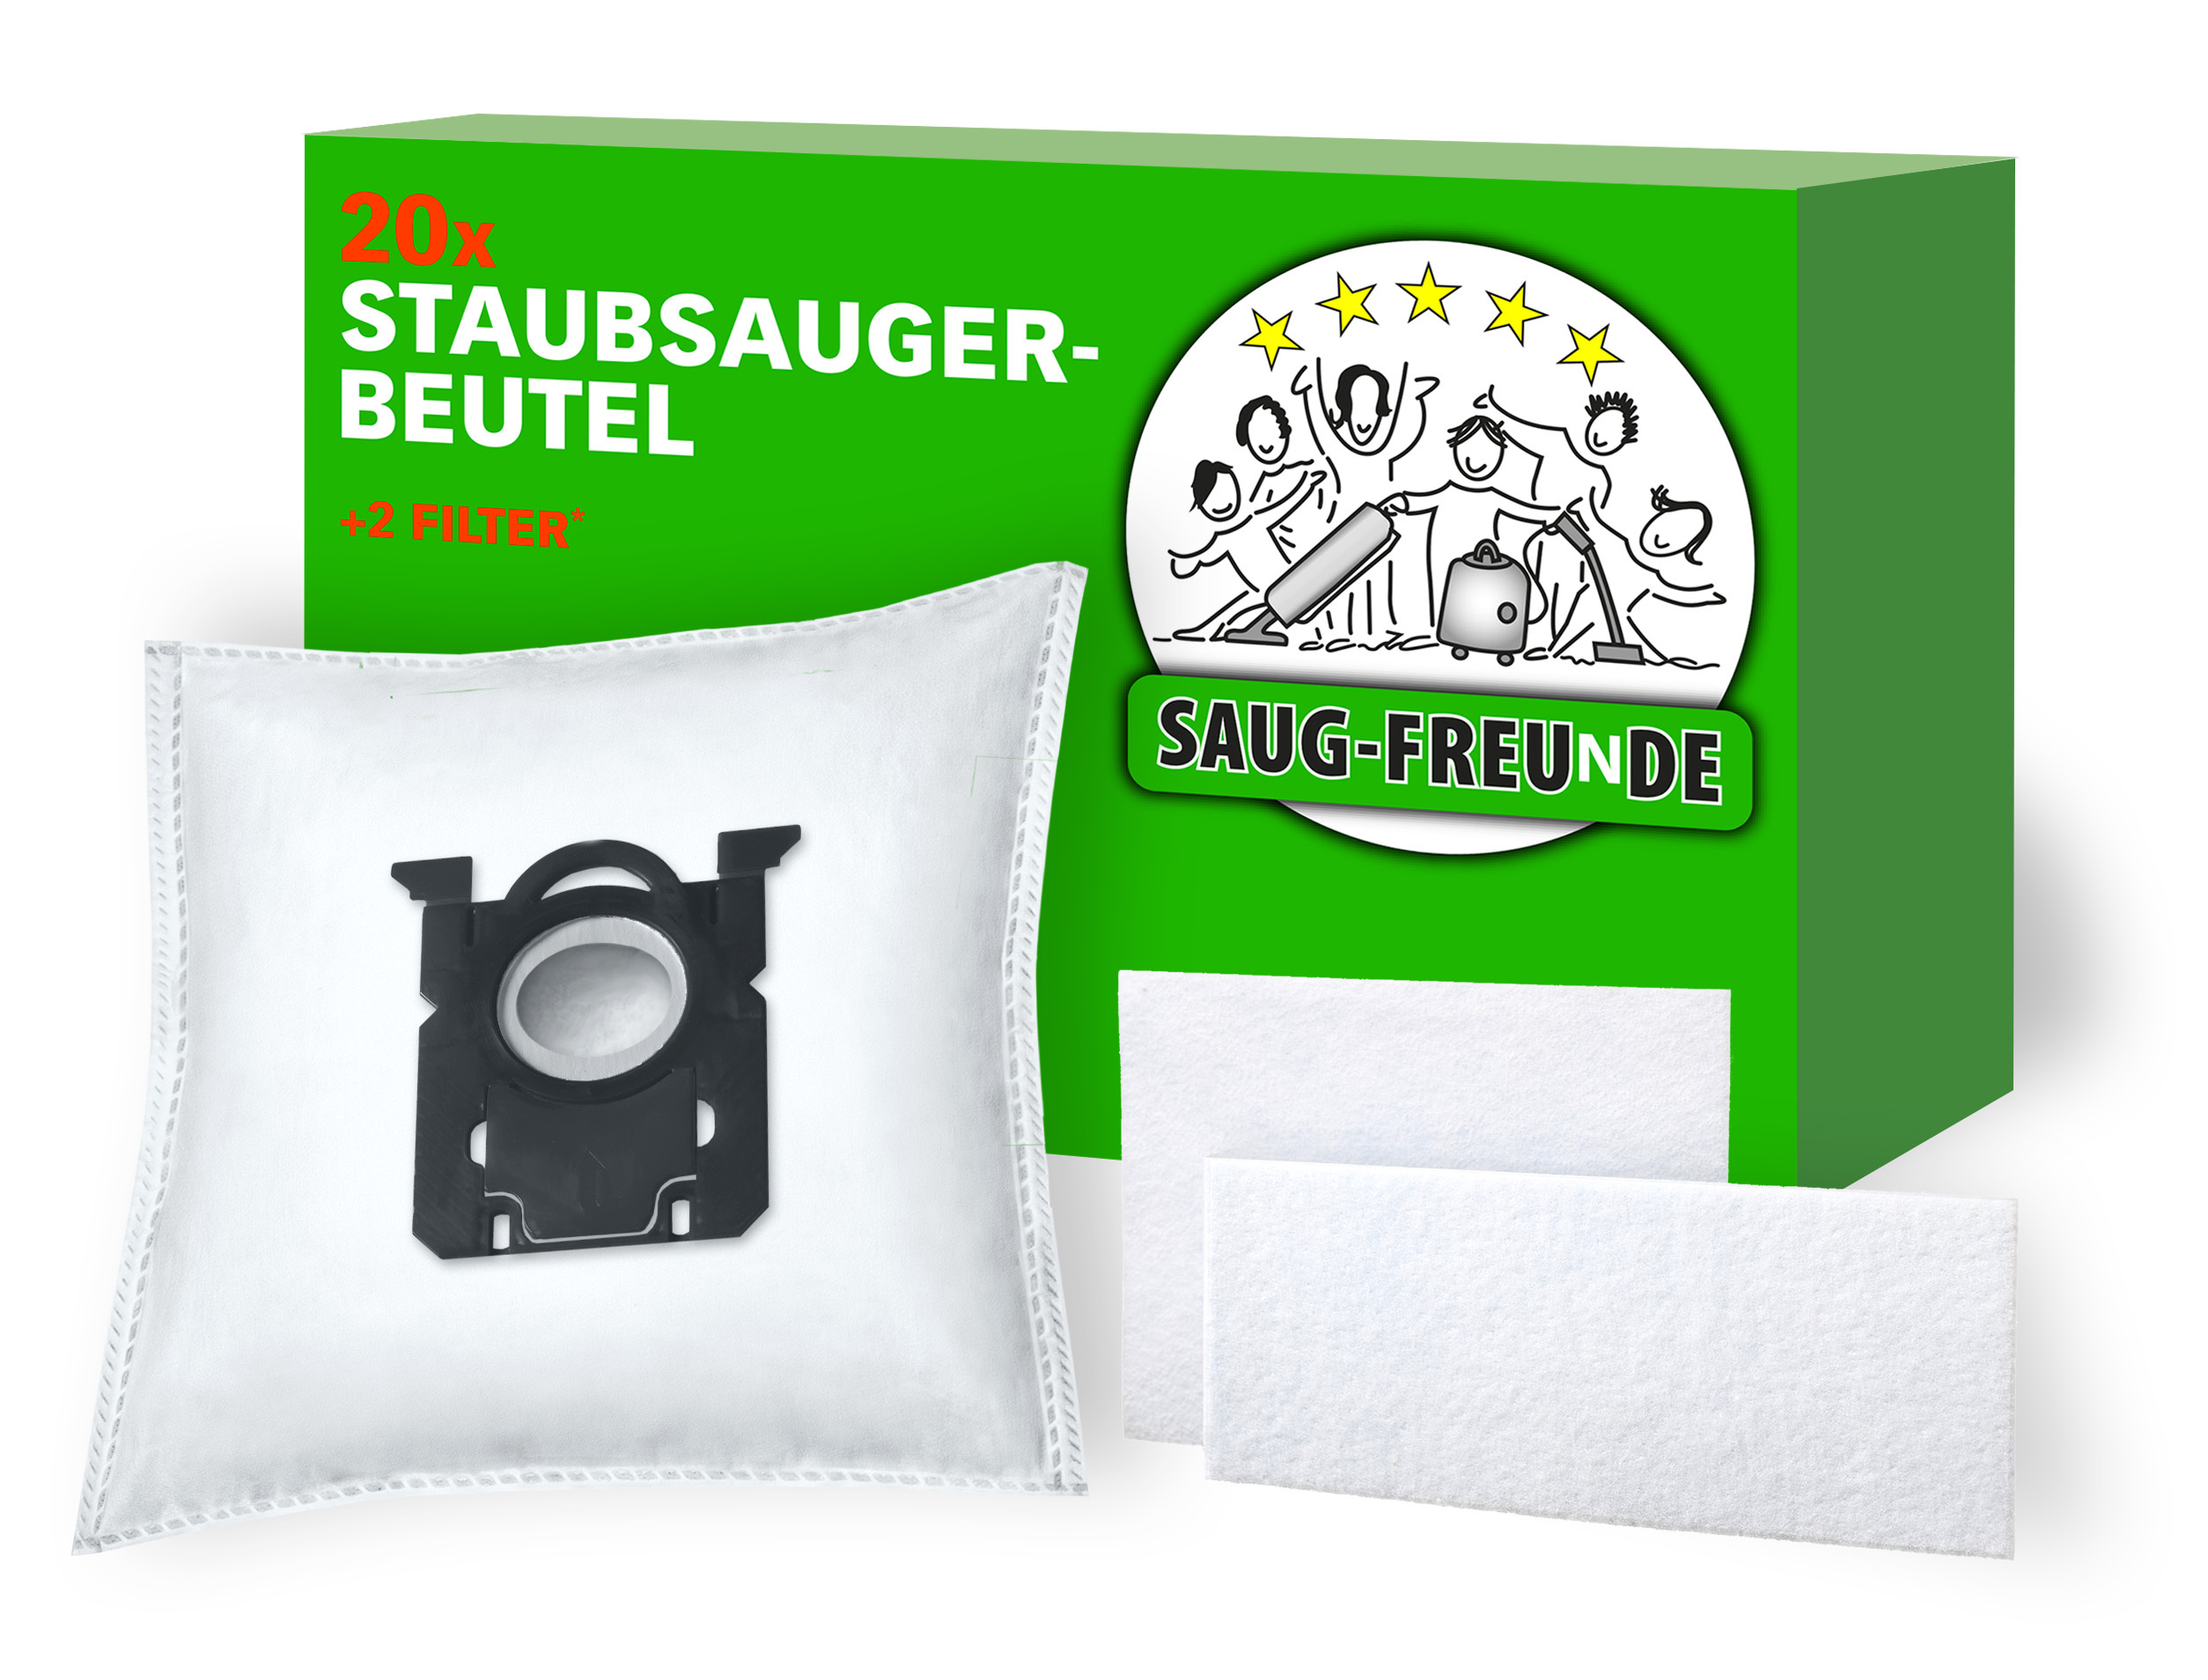 SAUG-FREUNDE Staubsauger-Beutel 10x